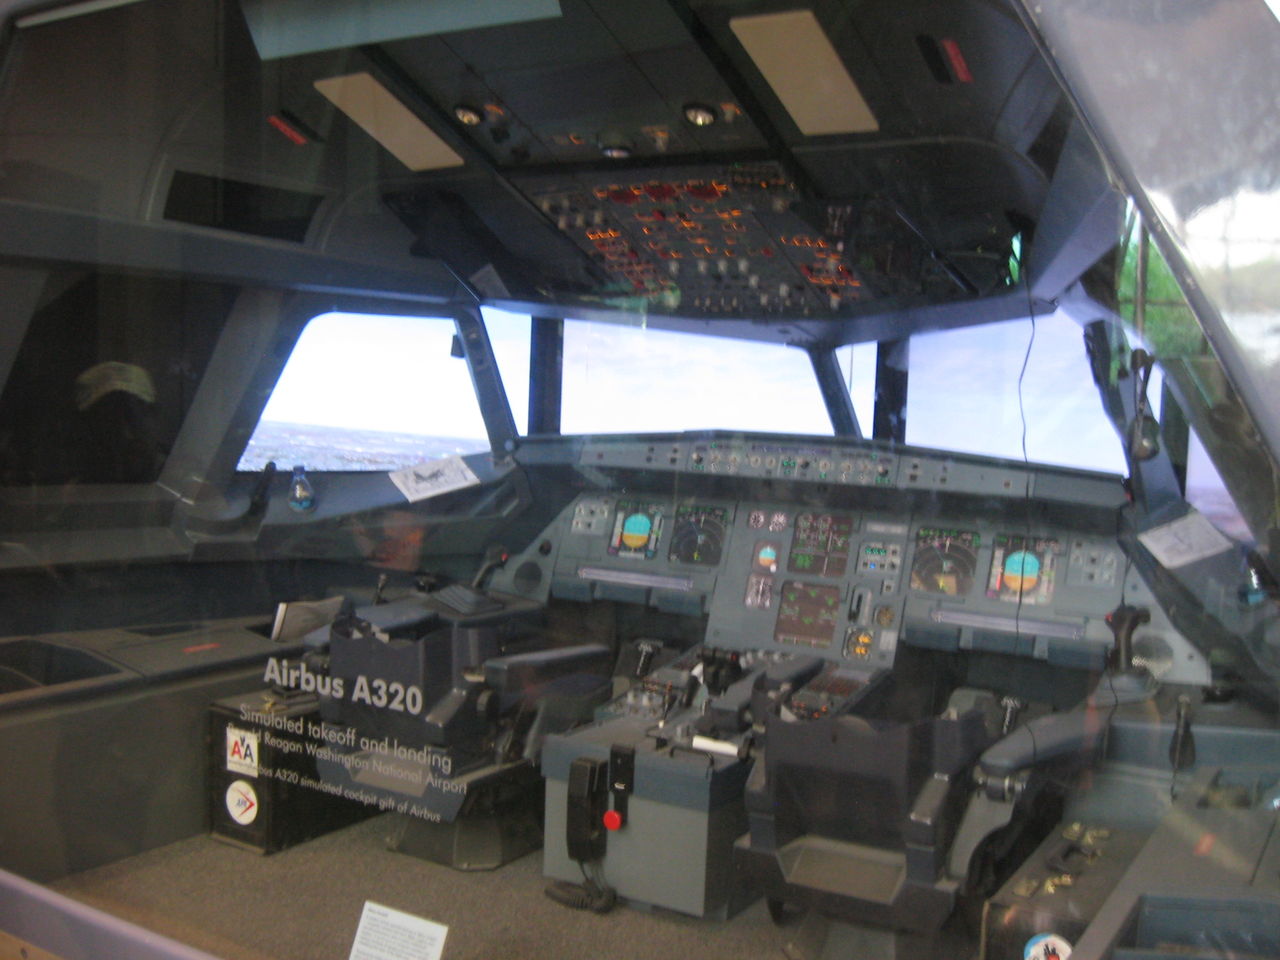 スミソニアン国立航空宇宙博物館の旅客機に関する展示物について Ske48とエアバスa380超絶推し男のblog